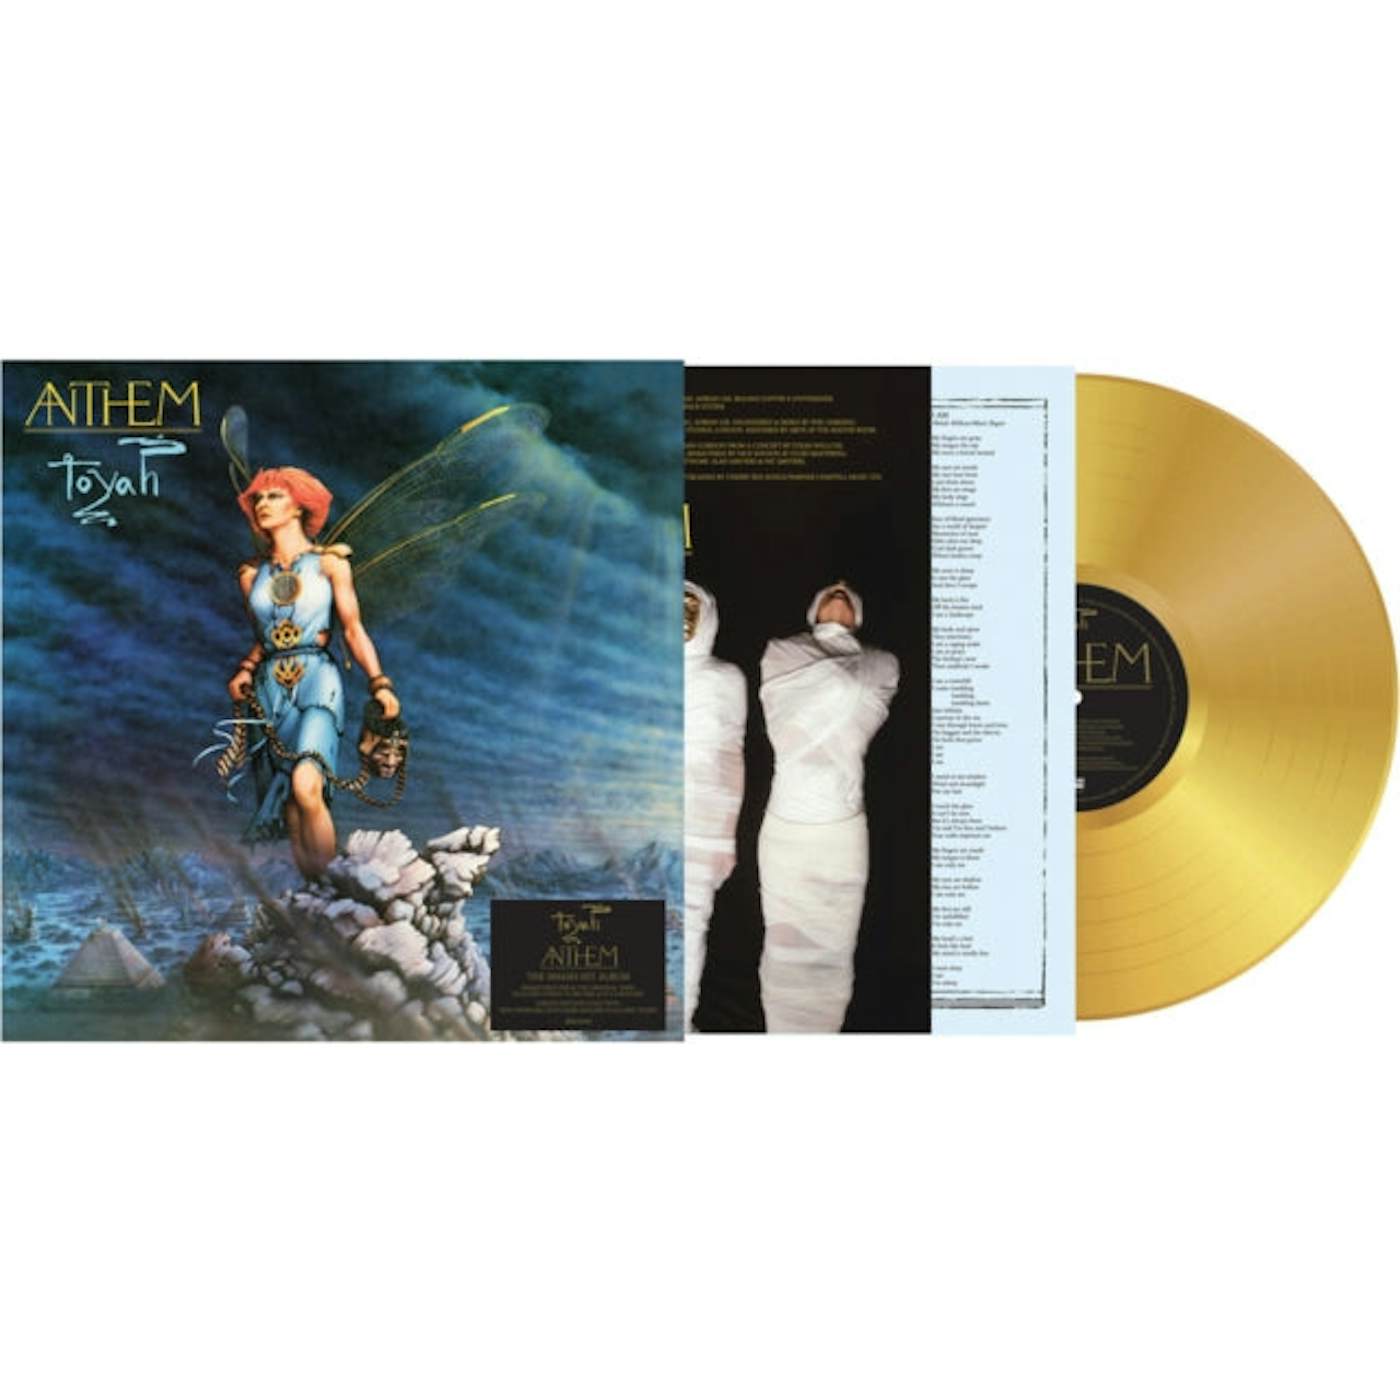 Toyah LP Vinyl Record - Anthem (Gold Vinyl)